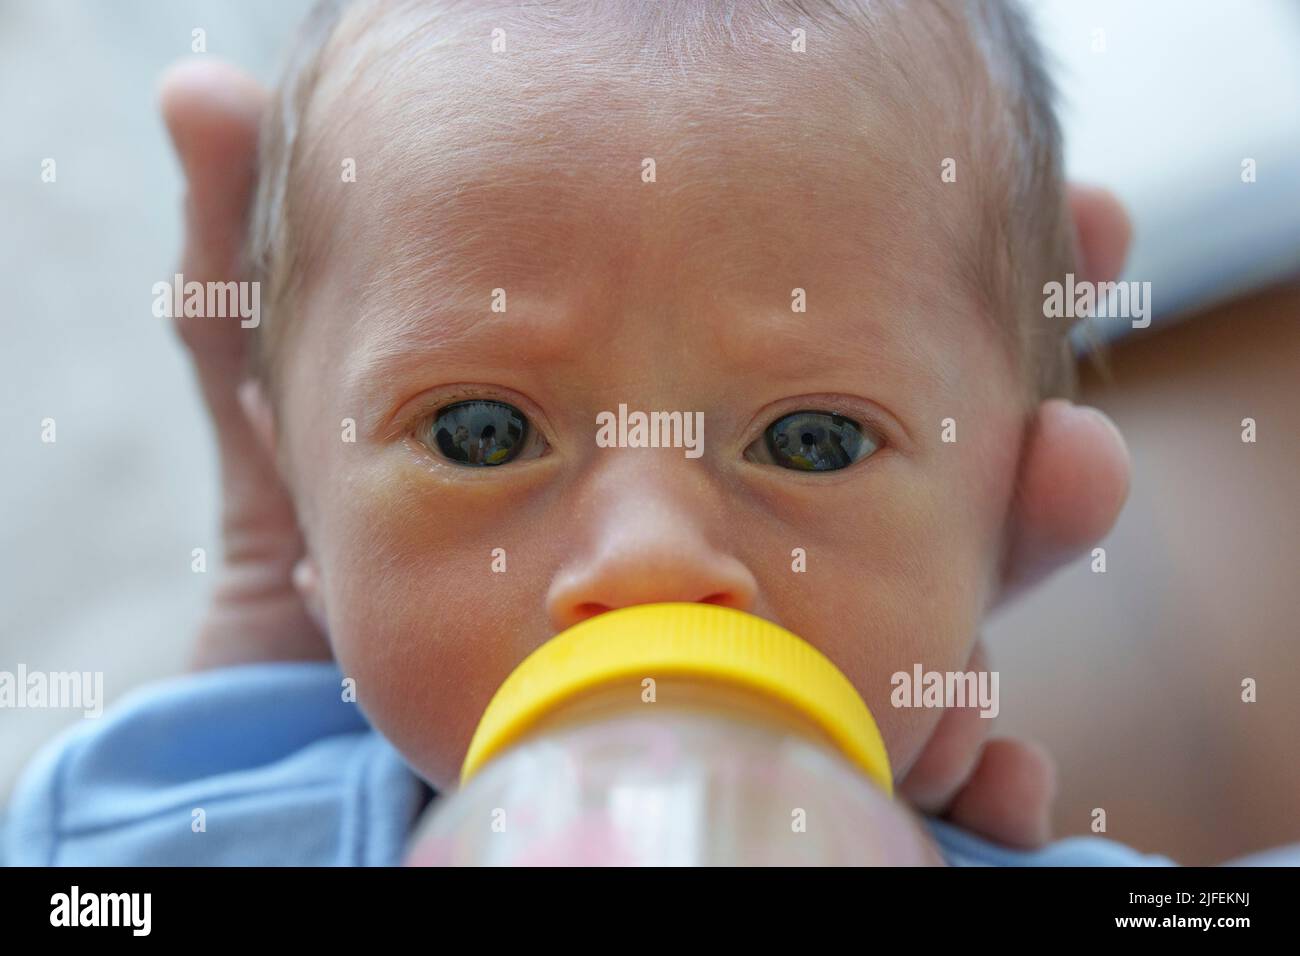 Primer plano de un bebé recién nacido succionando en el biberón mientras mira la cámara Foto de stock